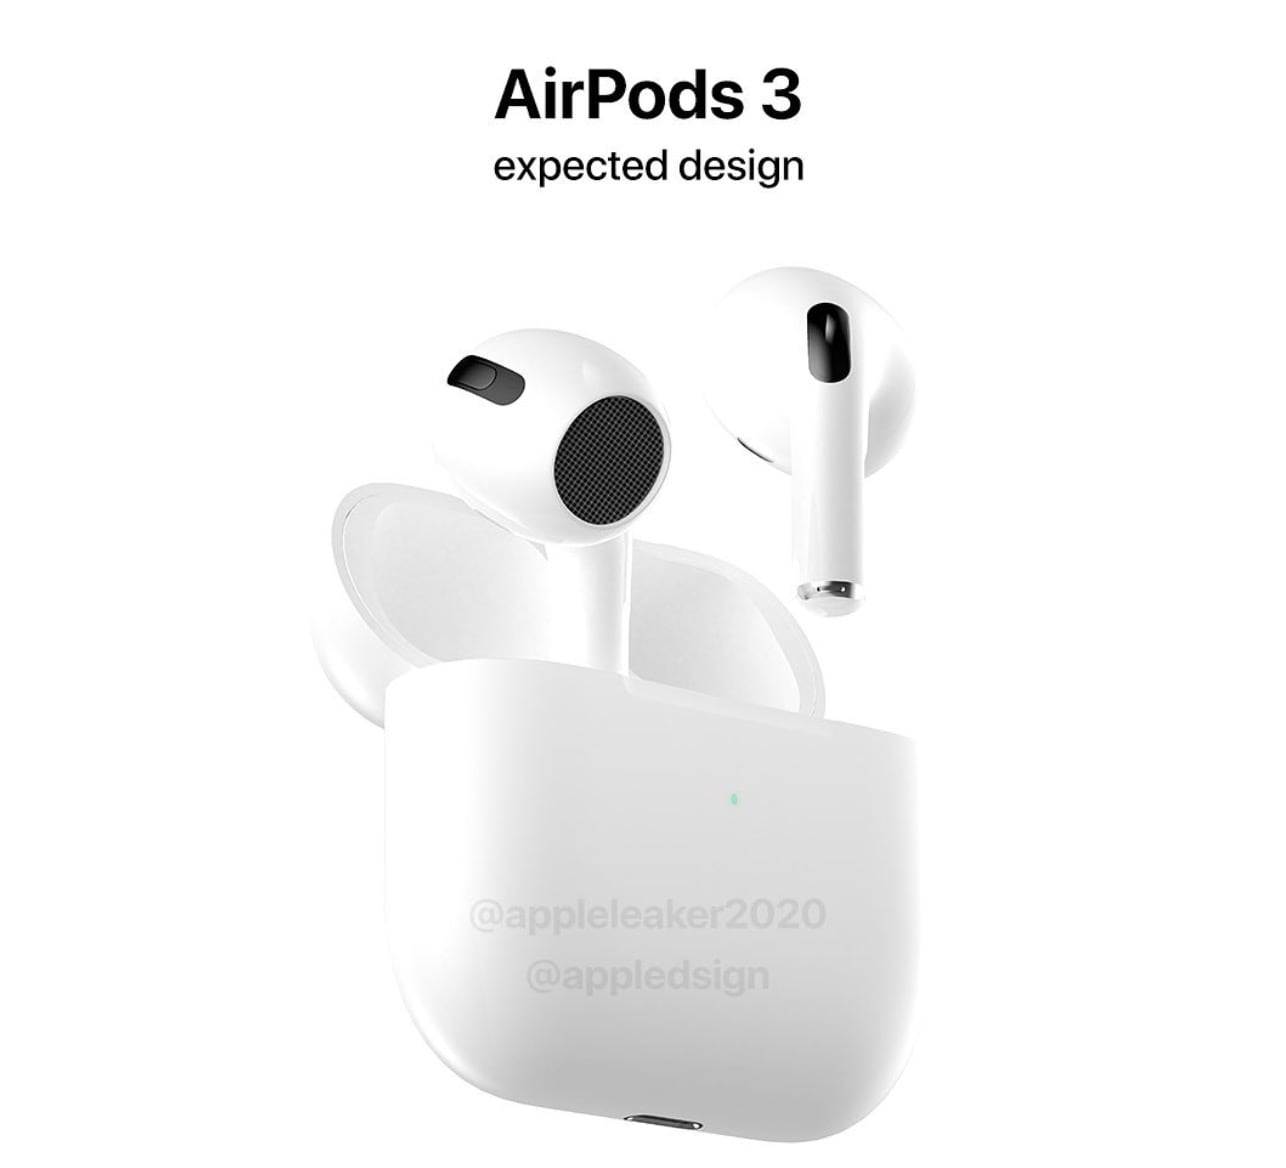 Czy tak będą wyglądać najnowsze Apple AirPods 3? polecane, ciekawostki Premiera, Apple, AirPods 3. generacji, AirPods 3  O AirPods 3 mówi się w sieci już od kilku miesięcy. Nowe słuchawki, które mają być podobne do obecnej wersji Pro mają pojawić się w sprzedaży w przyszłym roku. Jak będą wyglądać? airPods3 2